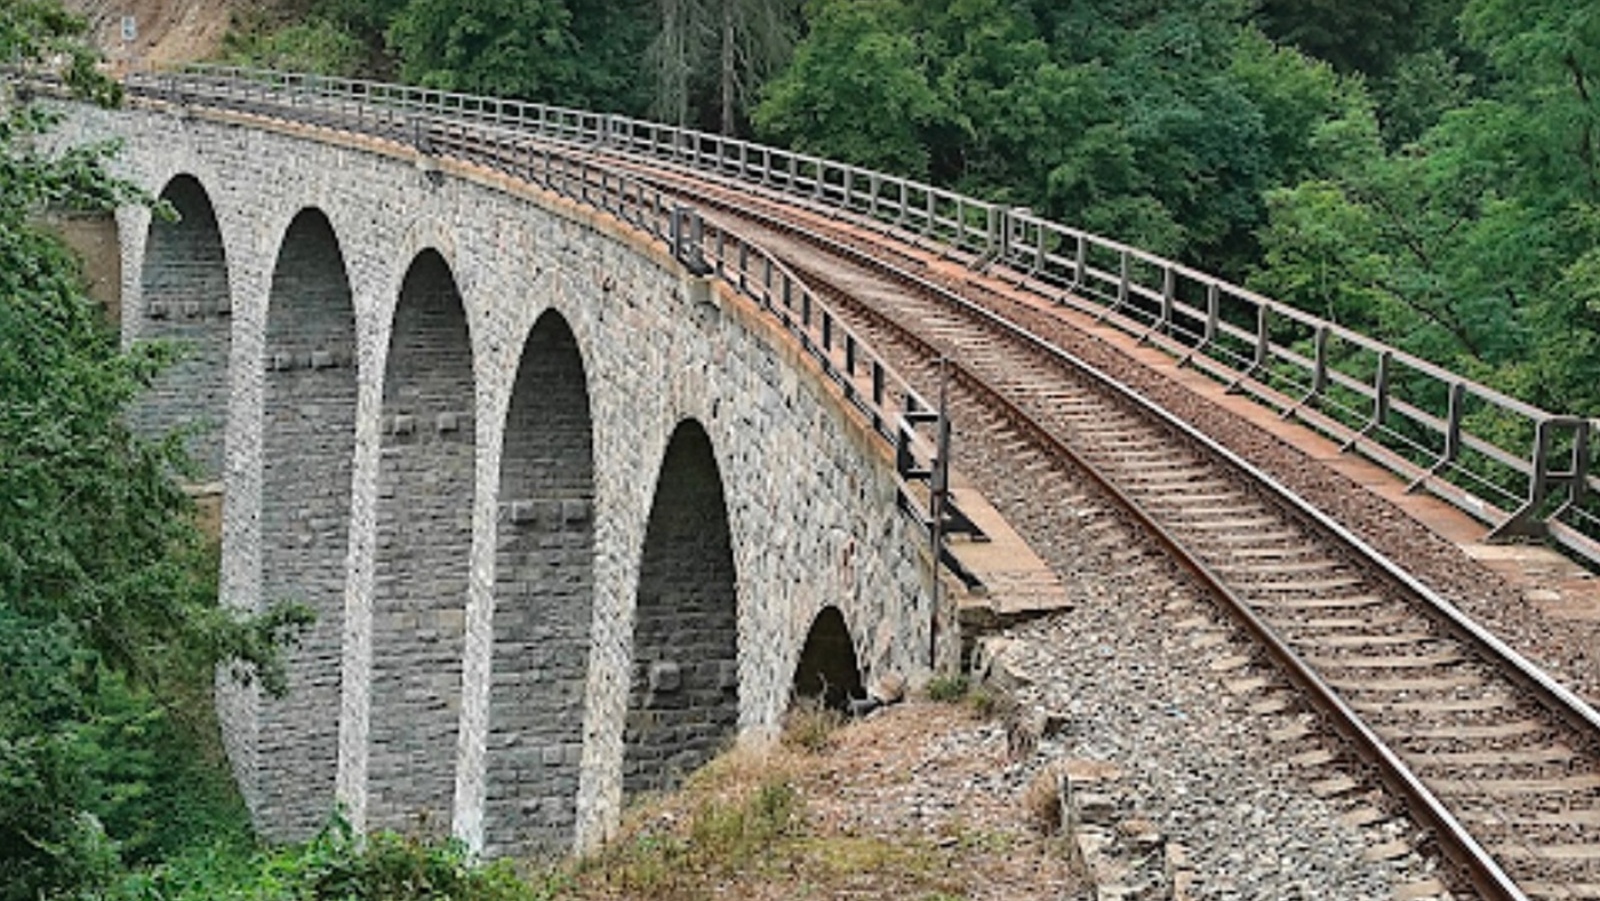 012-Záchrana osoby viadukt Žampach (1).jpg